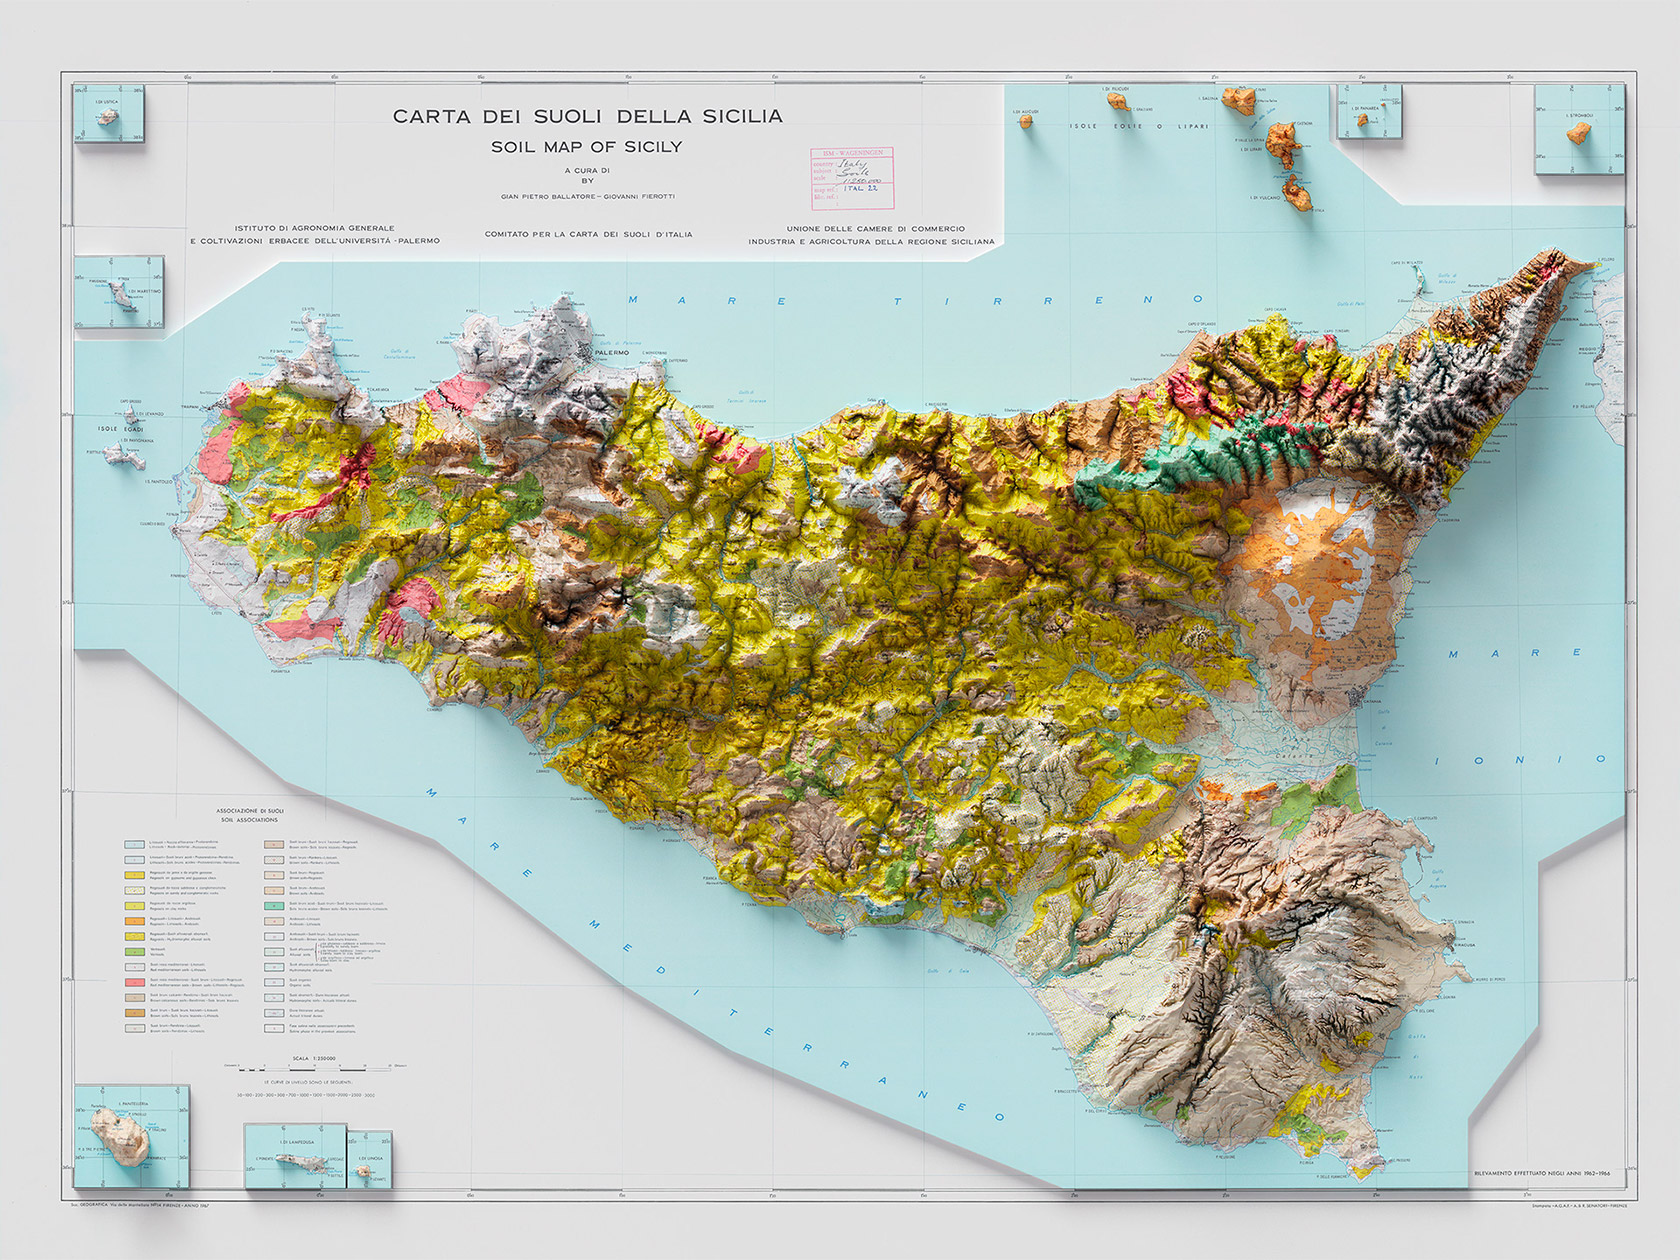 意大利数据可视化工作室精美的3D地图设计,出色的“3D 地图之旅”